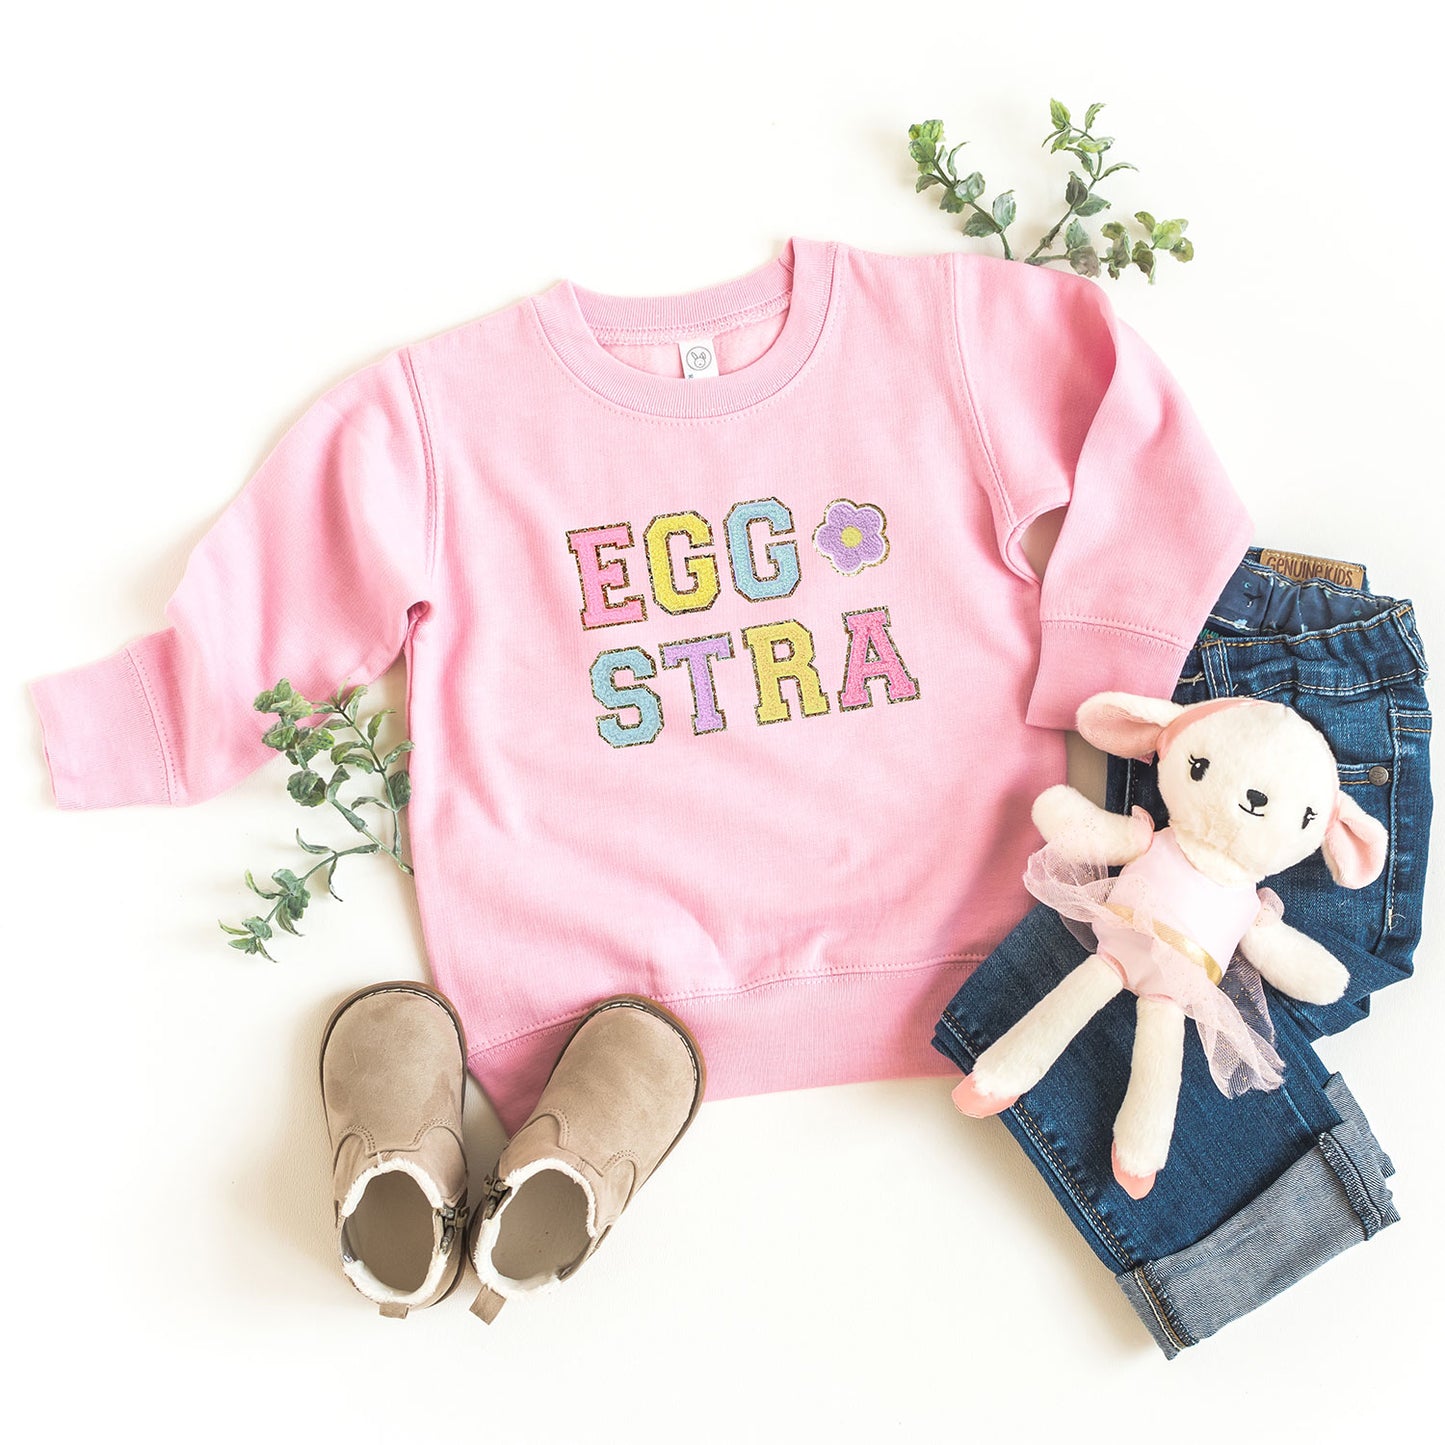 Eggstra Flower | Toddler Sweatshirt